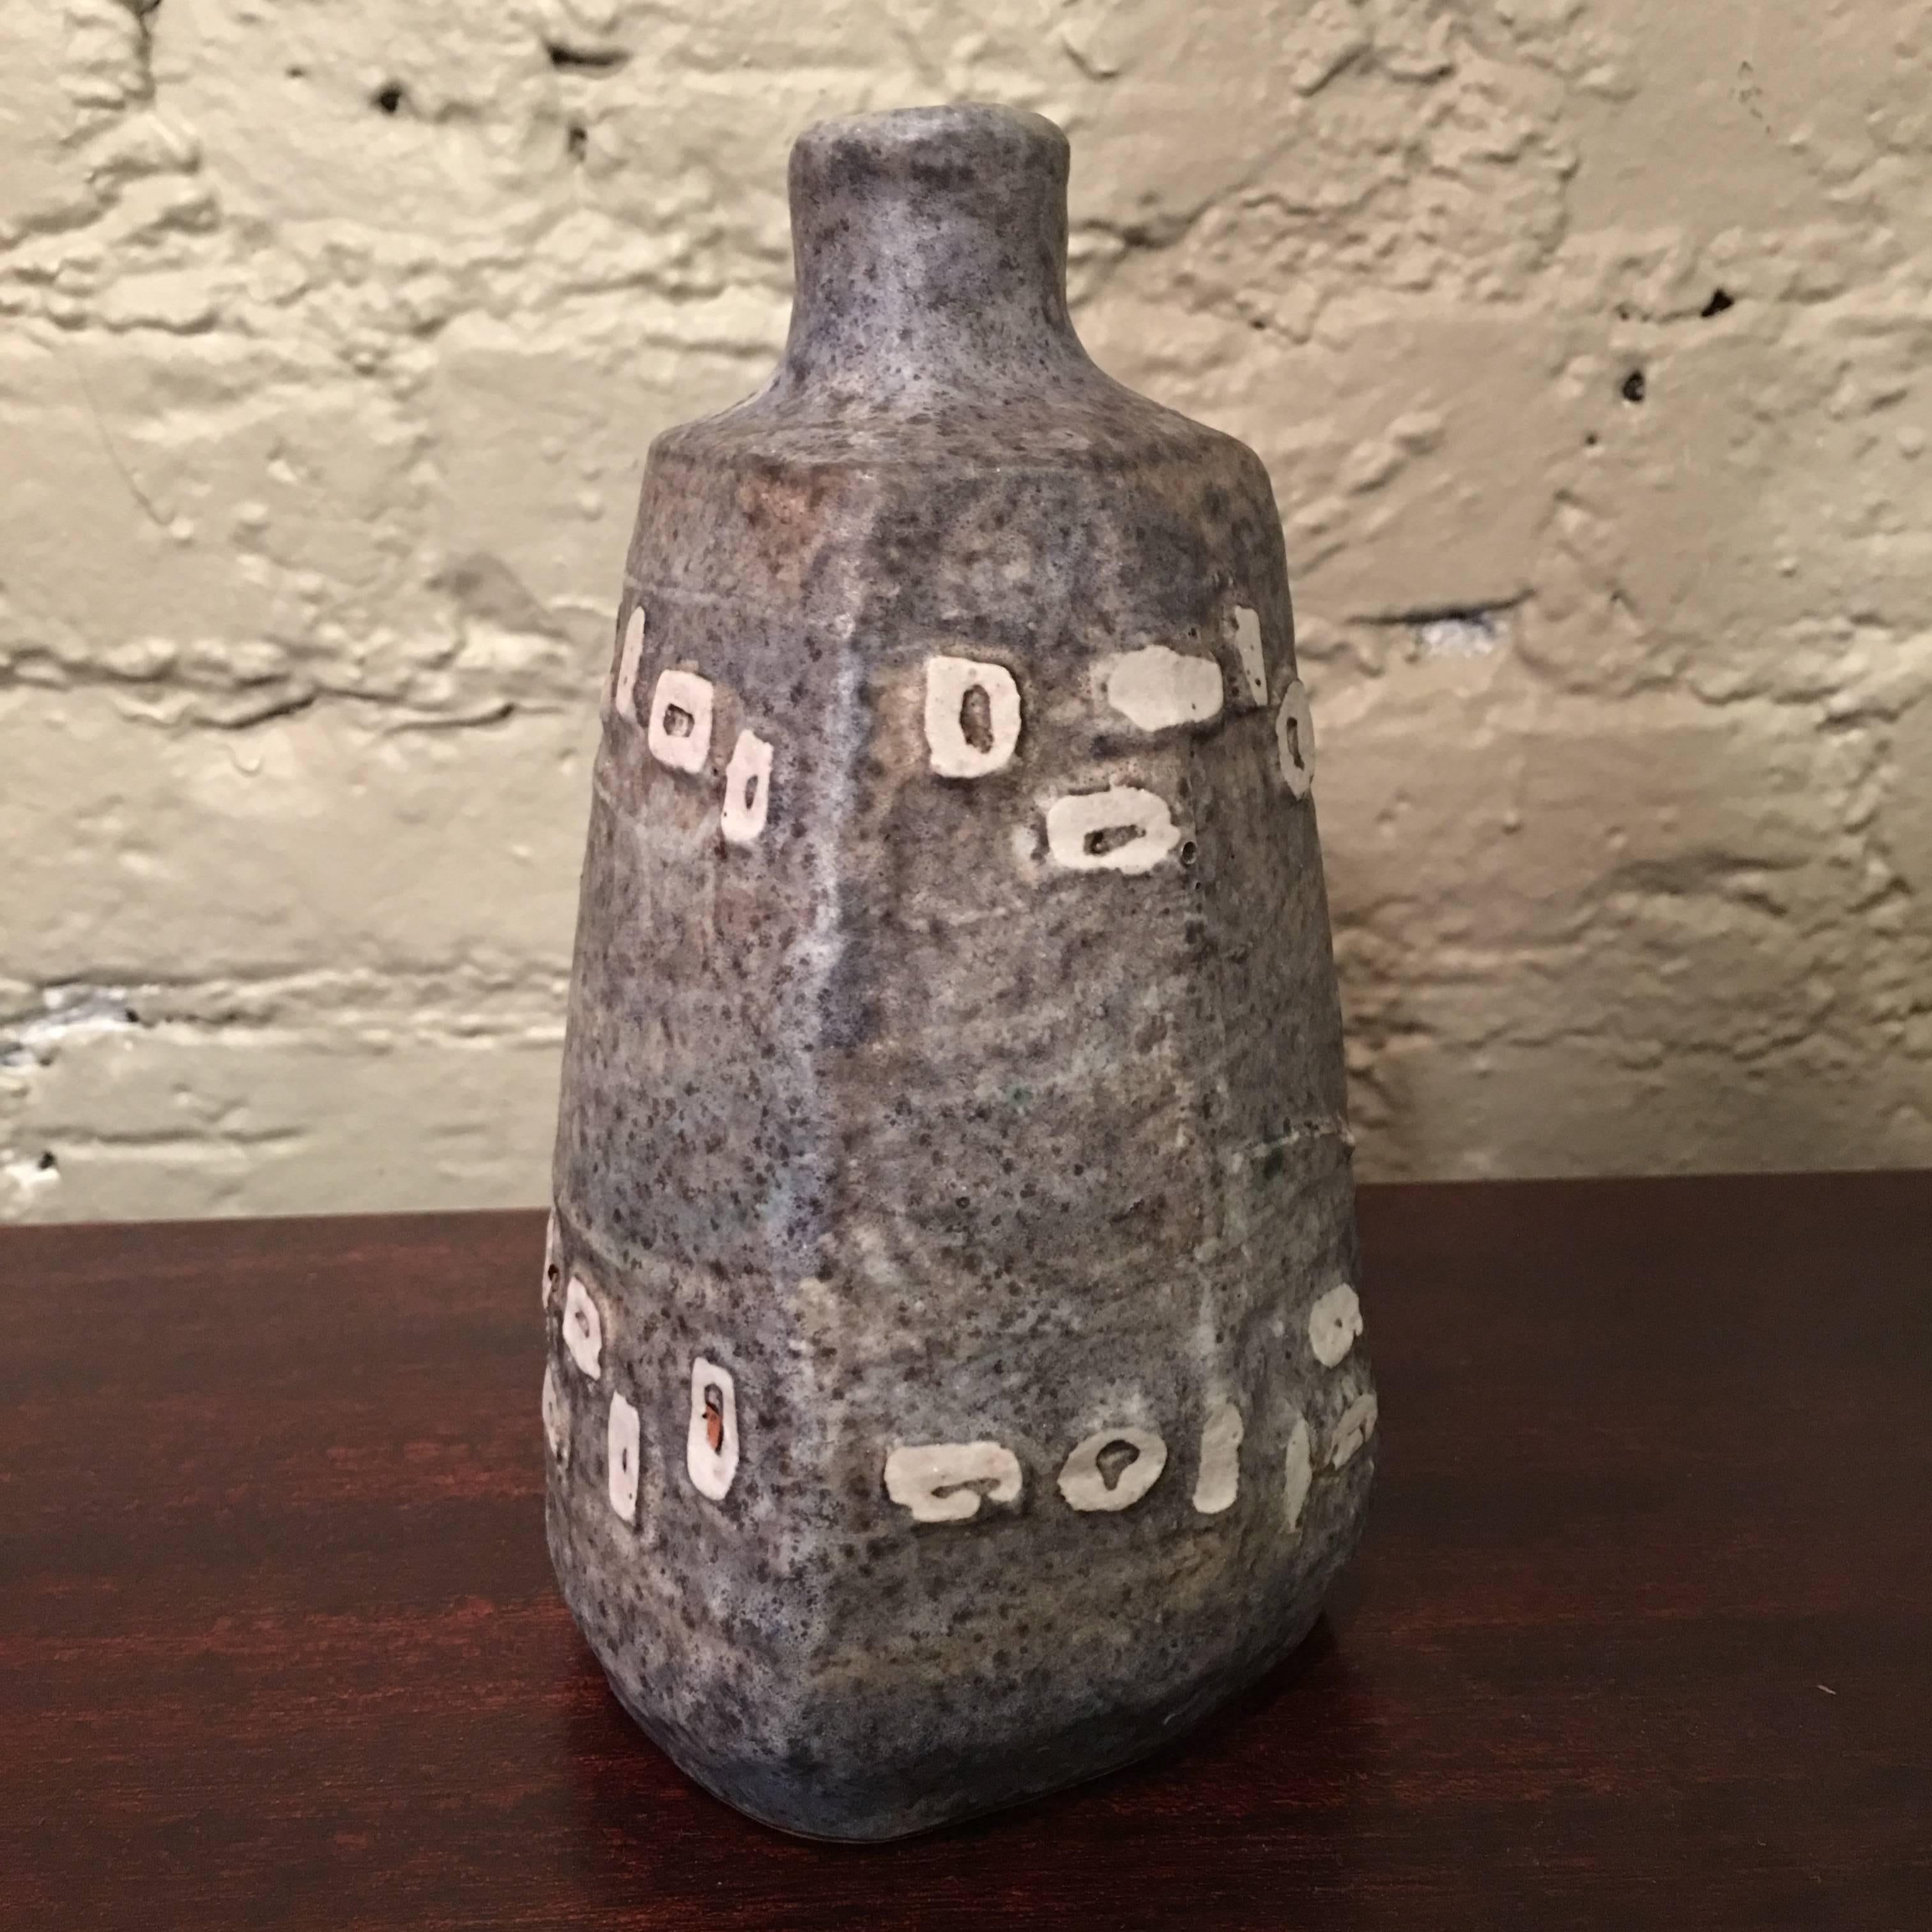 American Mid-Century Modern Brutalist Art Pottery Bud Vase